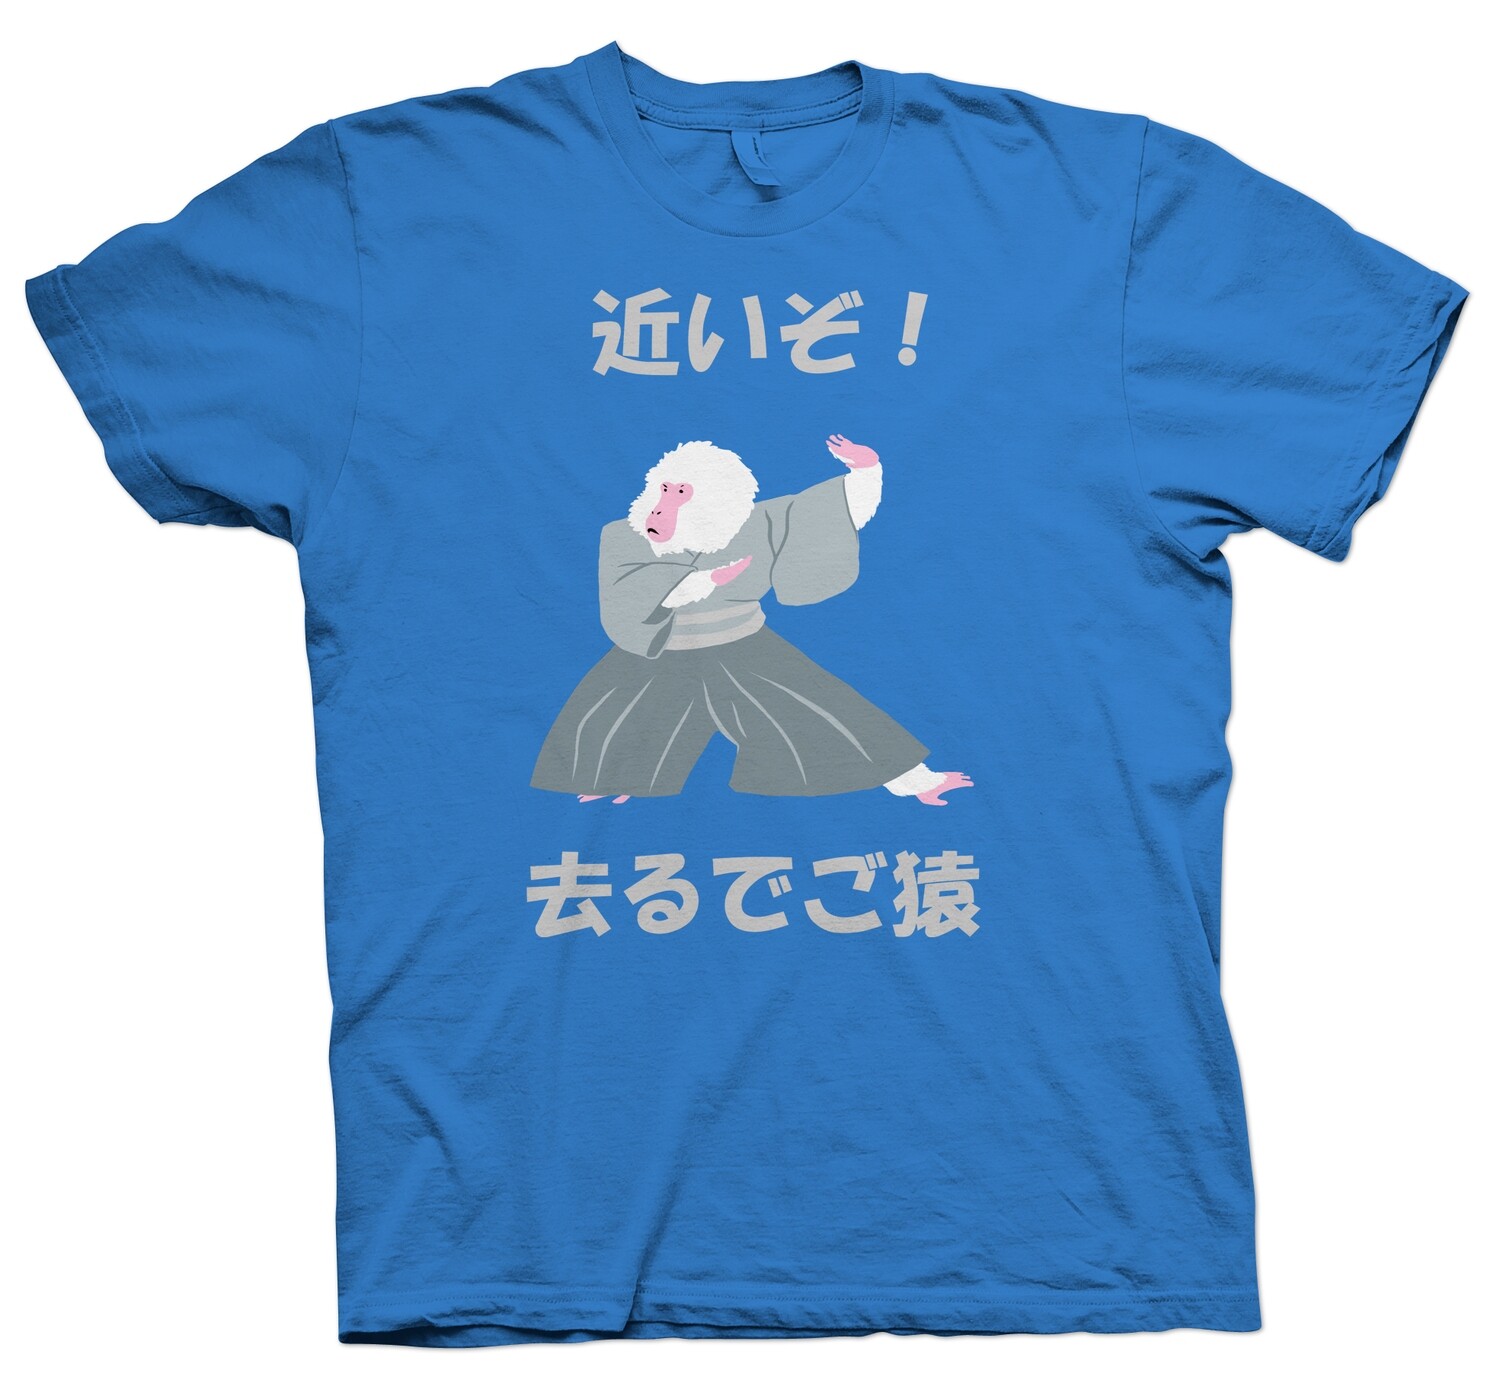 Chikaizo (Too close) Shirt